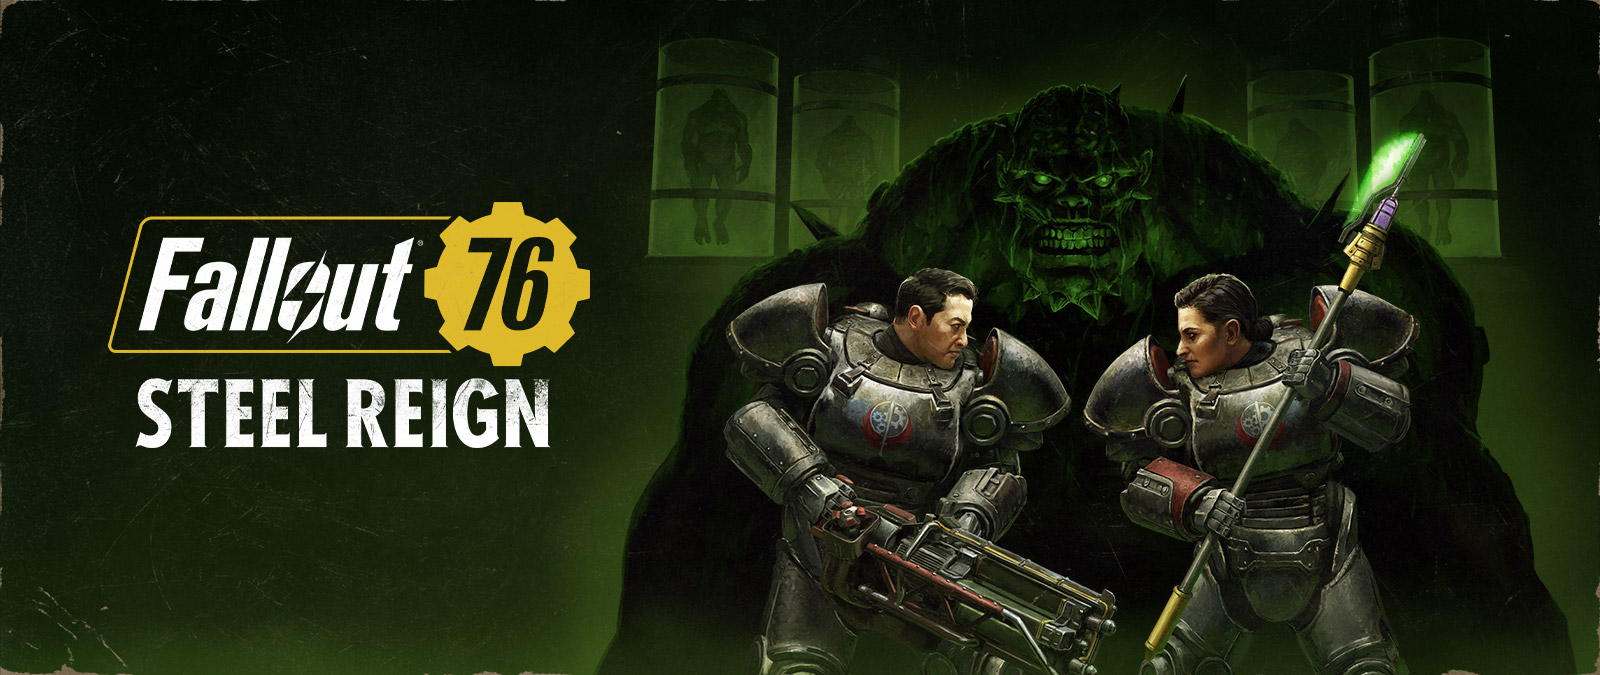 Fallout 76, Steel Reign; Mekanik zırh giymiş iki karakter arka plandaki büyük canavarla yüzleşiyor.